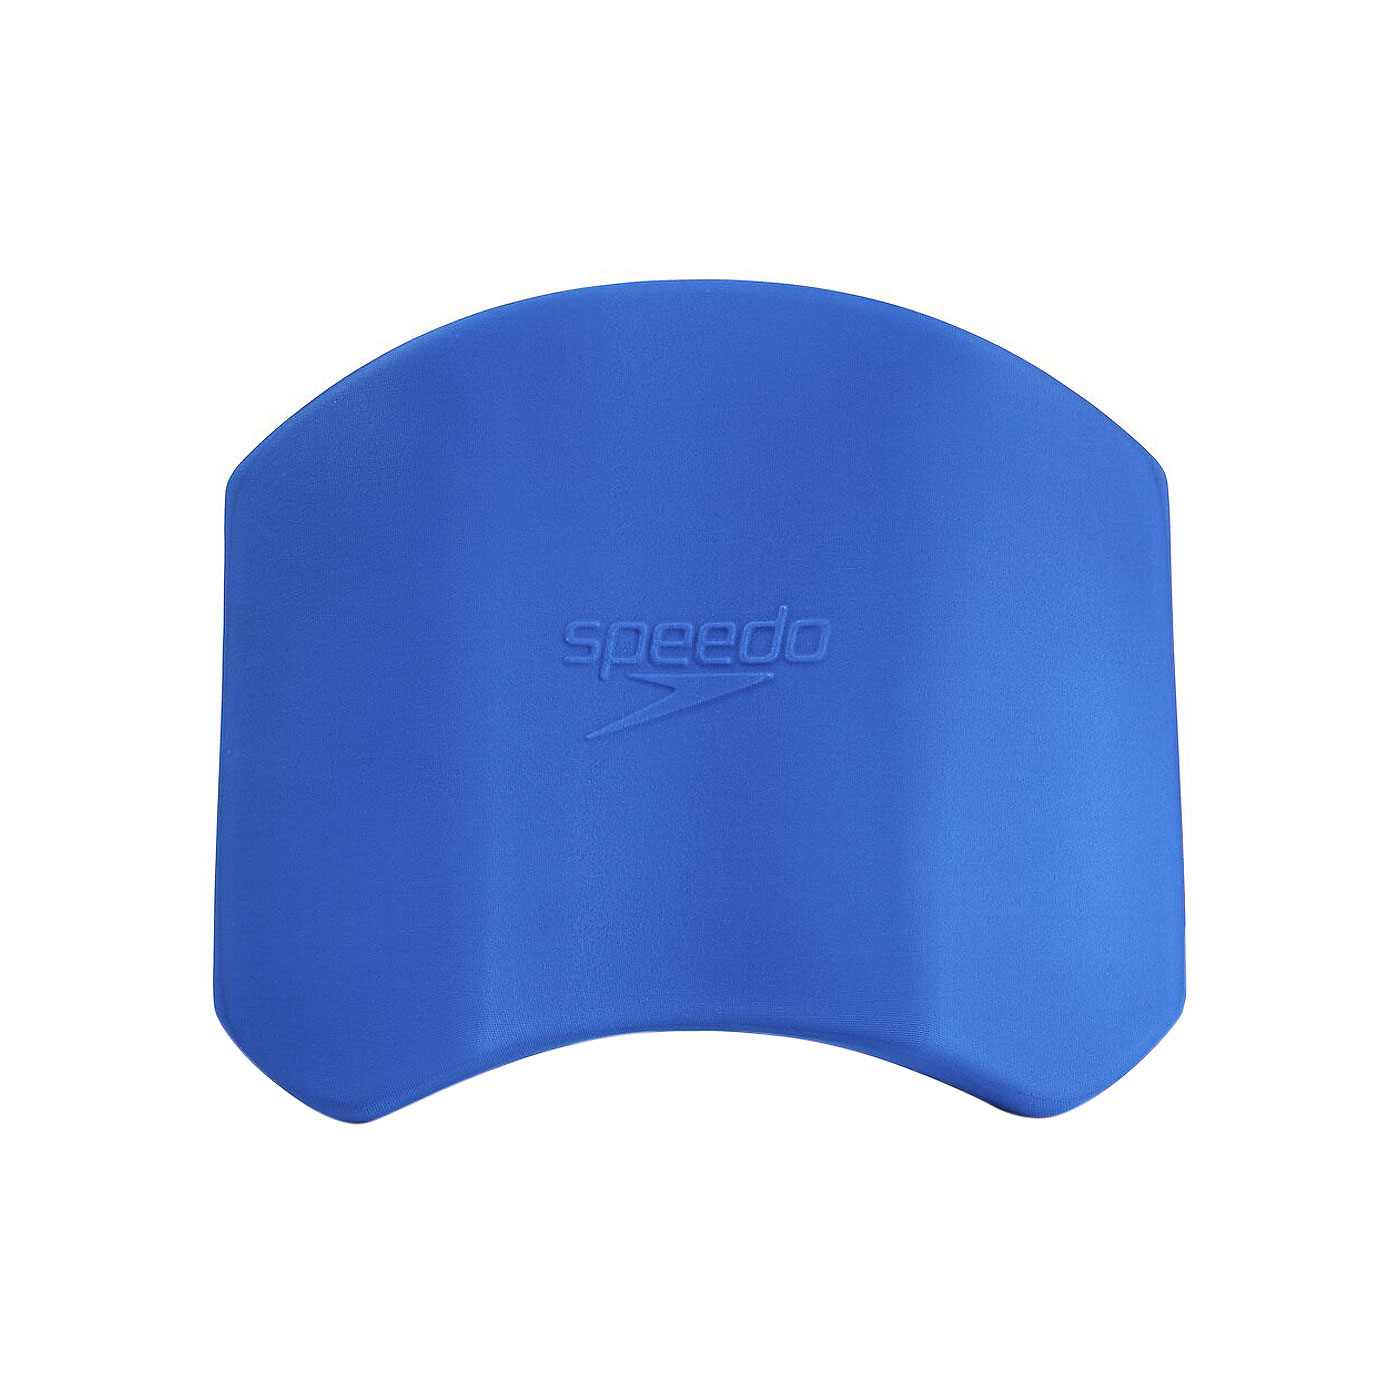 SPEEDO 成人競技型小型浮板 Pullkick SD8017900312 - 深藍